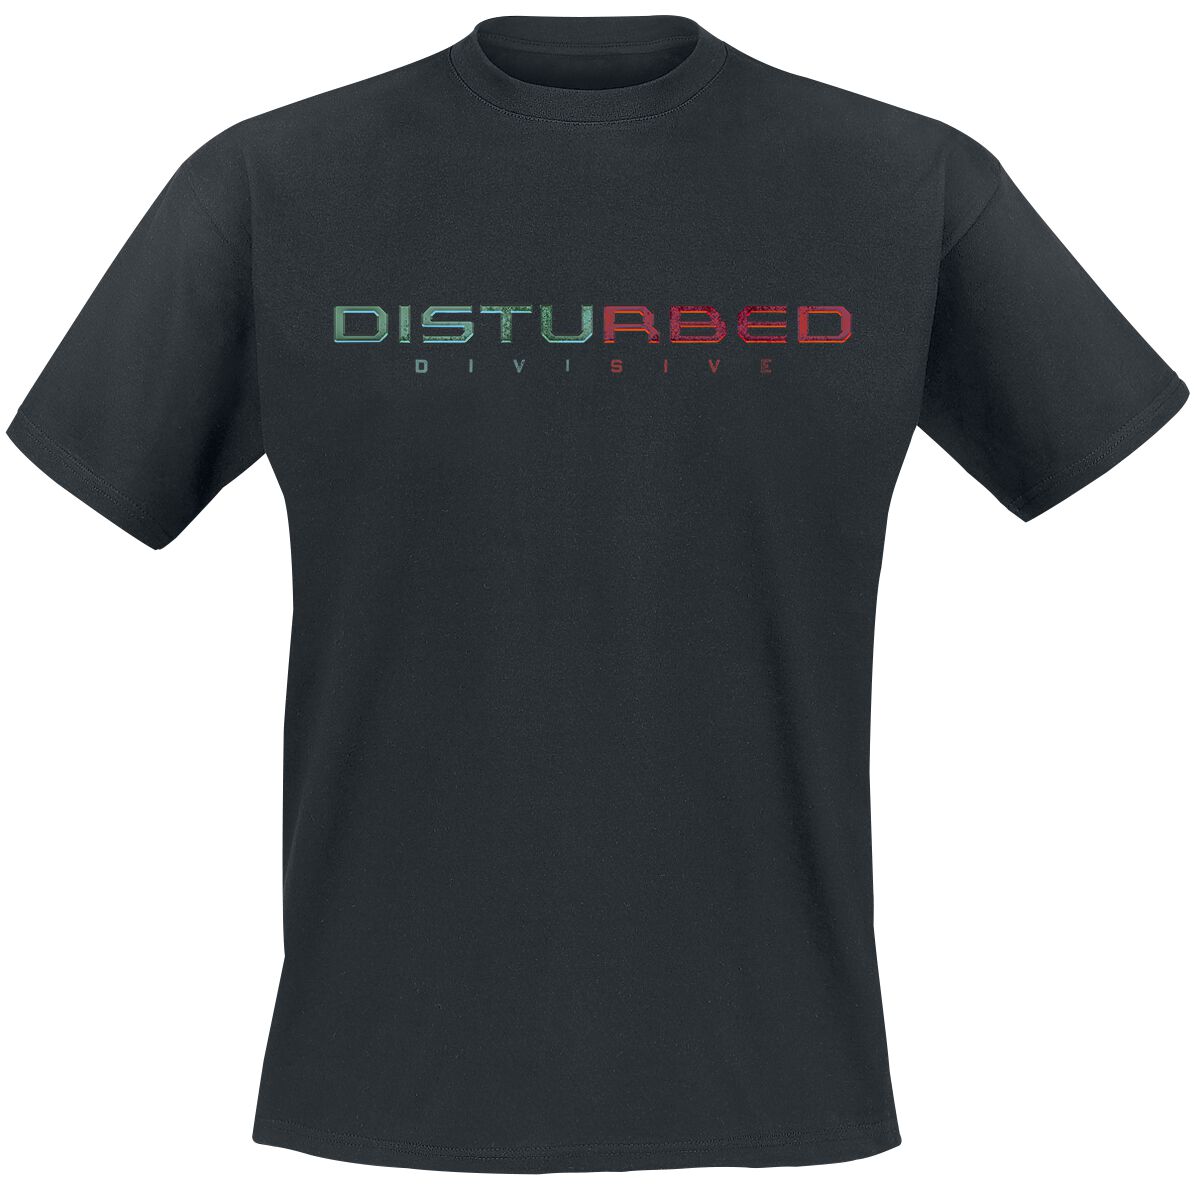 Disturbed T-Shirt - Divisive - S bis XXL - für Männer - Größe S - schwarz  - Lizenziertes Merchandise!